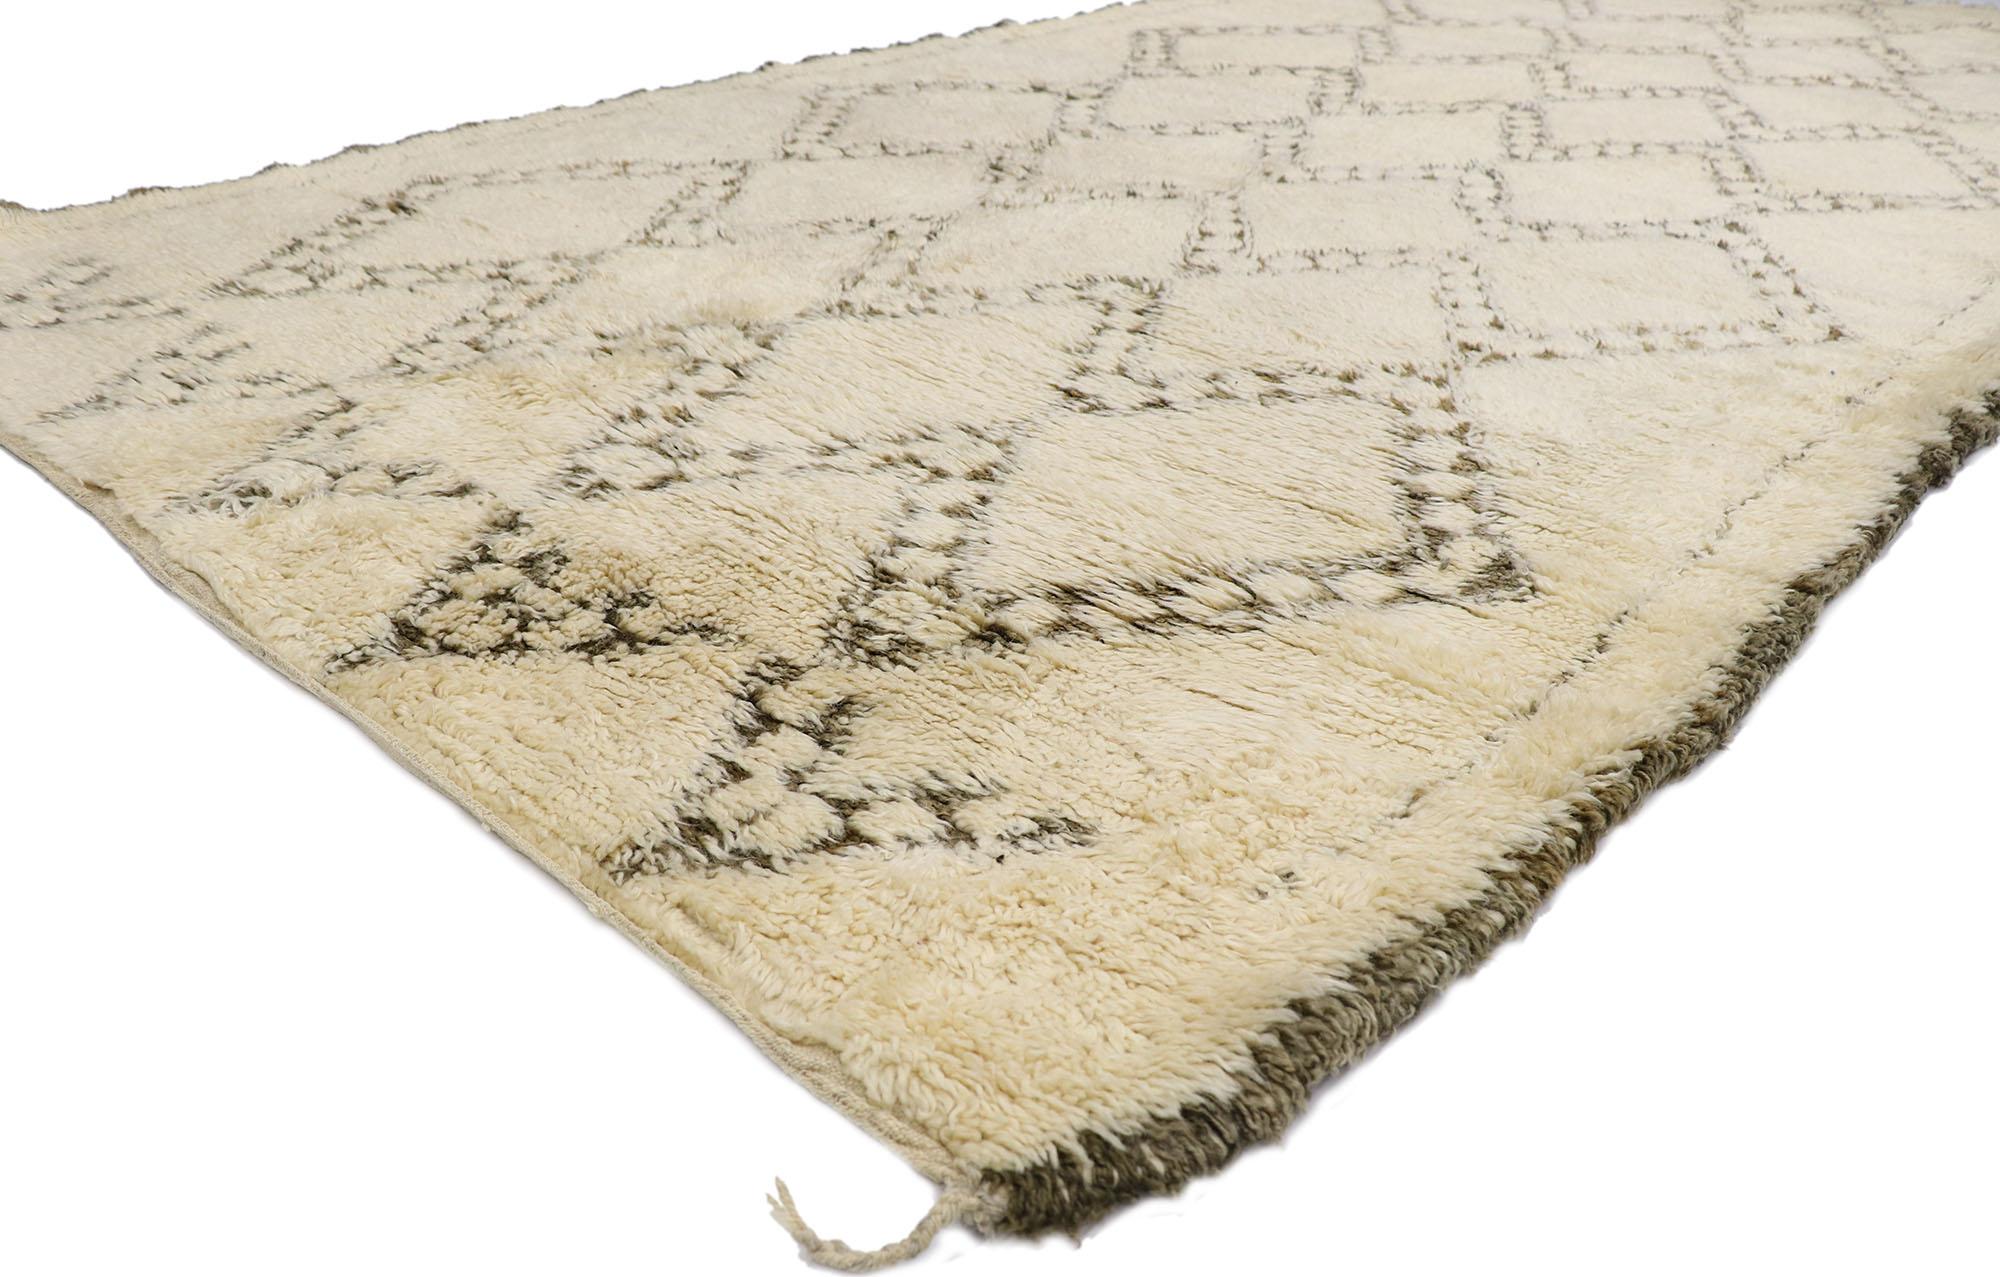 21372 Vintage Berber Beni Ourain Marokkanischer Teppich mit Mid-Century Modern Style 06'05 x 13'07. Mit seiner Schlichtheit, dem weichen Flor und dem modernen Stil der Jahrhundertmitte ist dieser handgeknüpfte marokkanische Berberteppich Beni Ourain